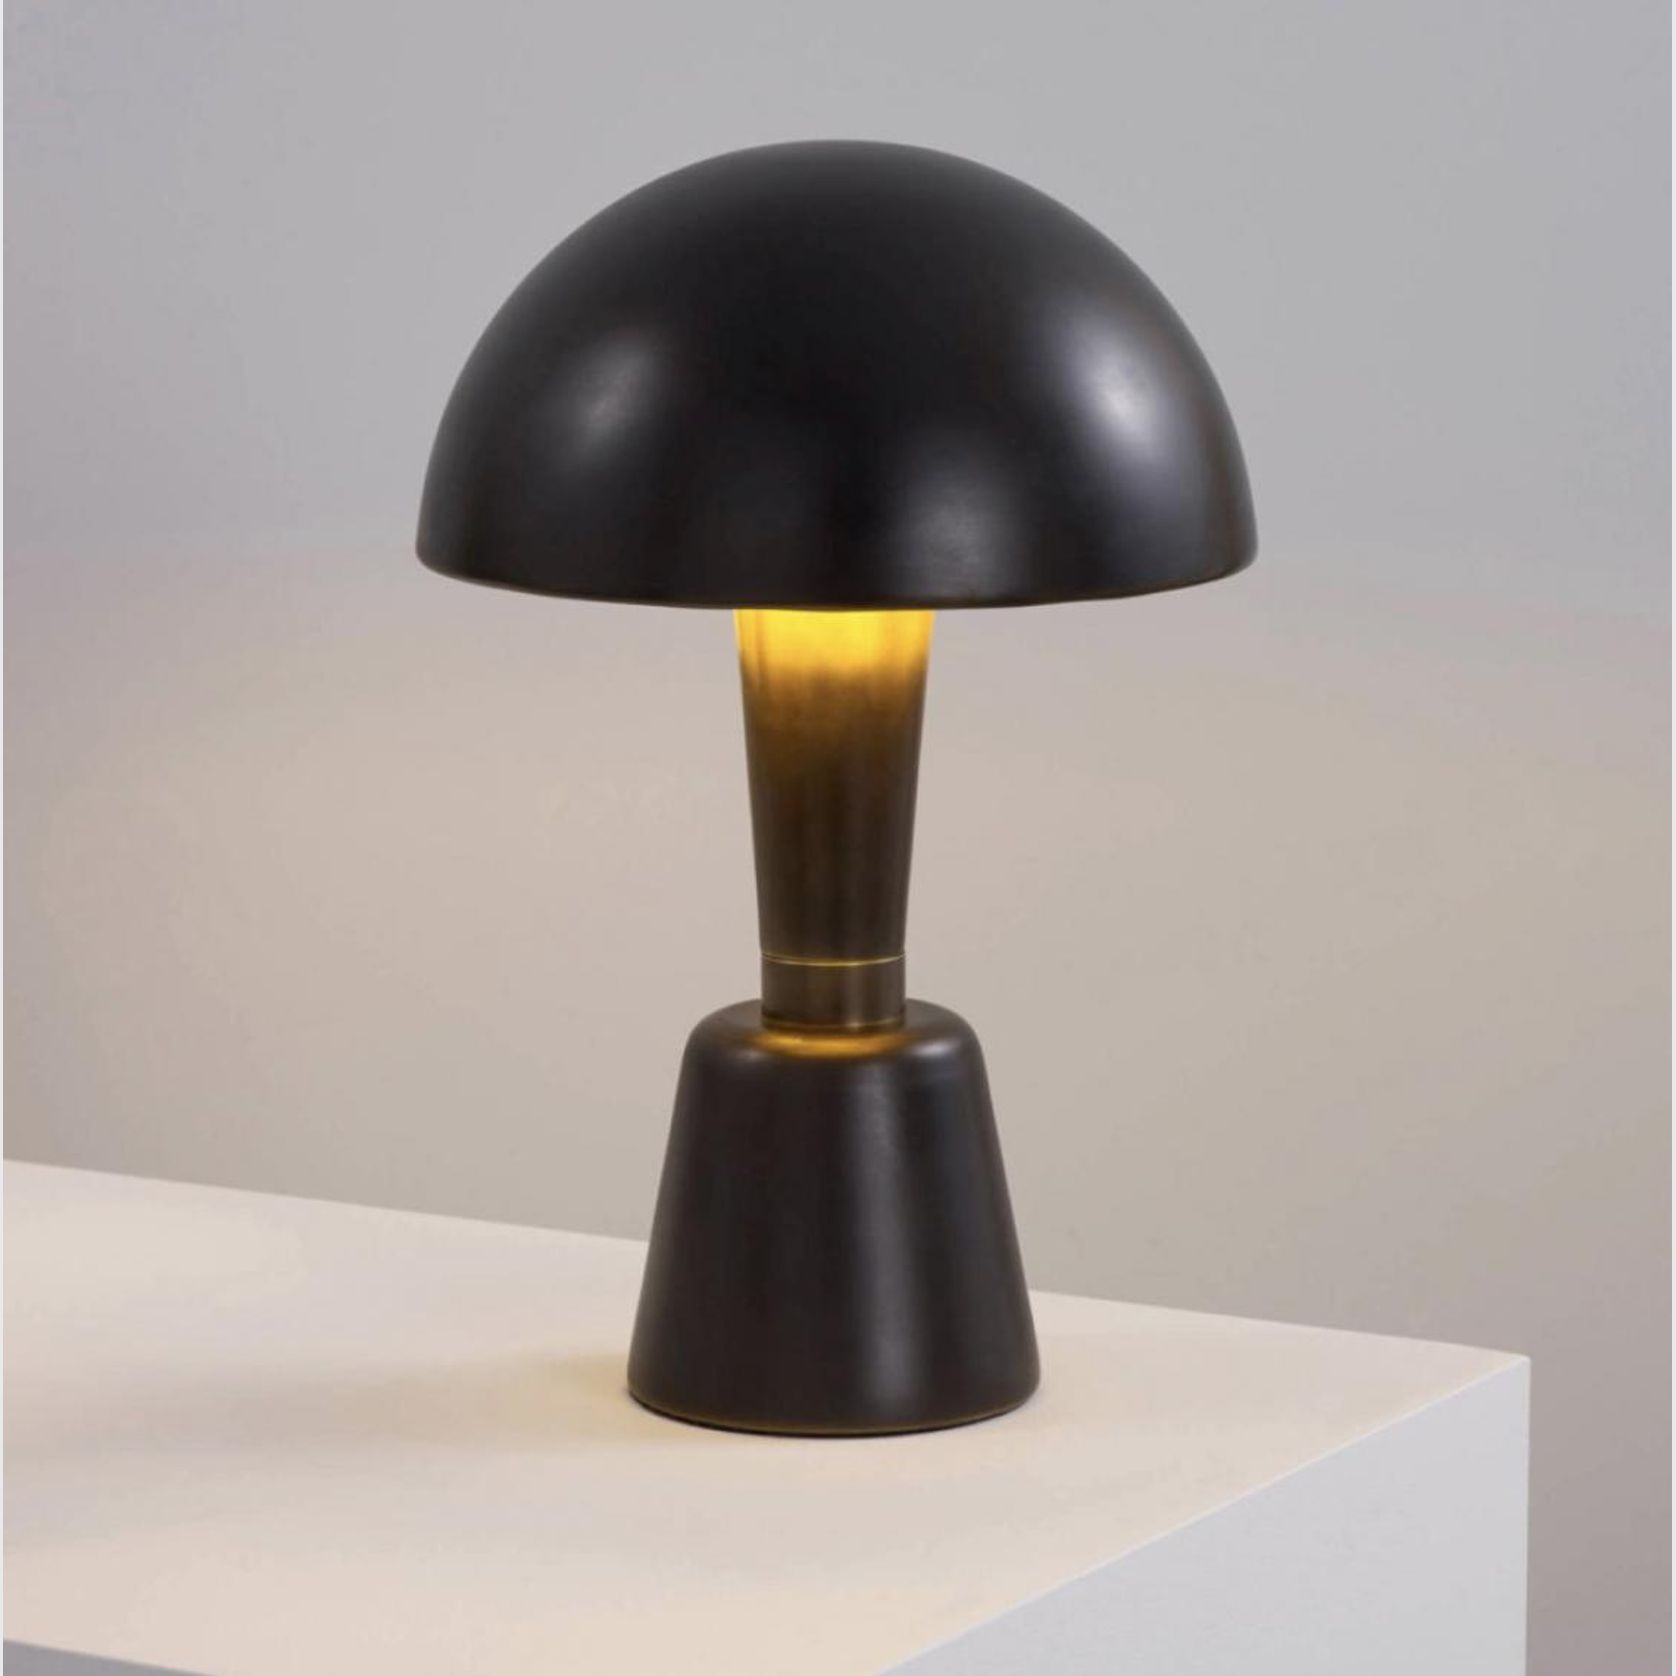 Cep Bolete Mushroom Table Lamp gallery detail image